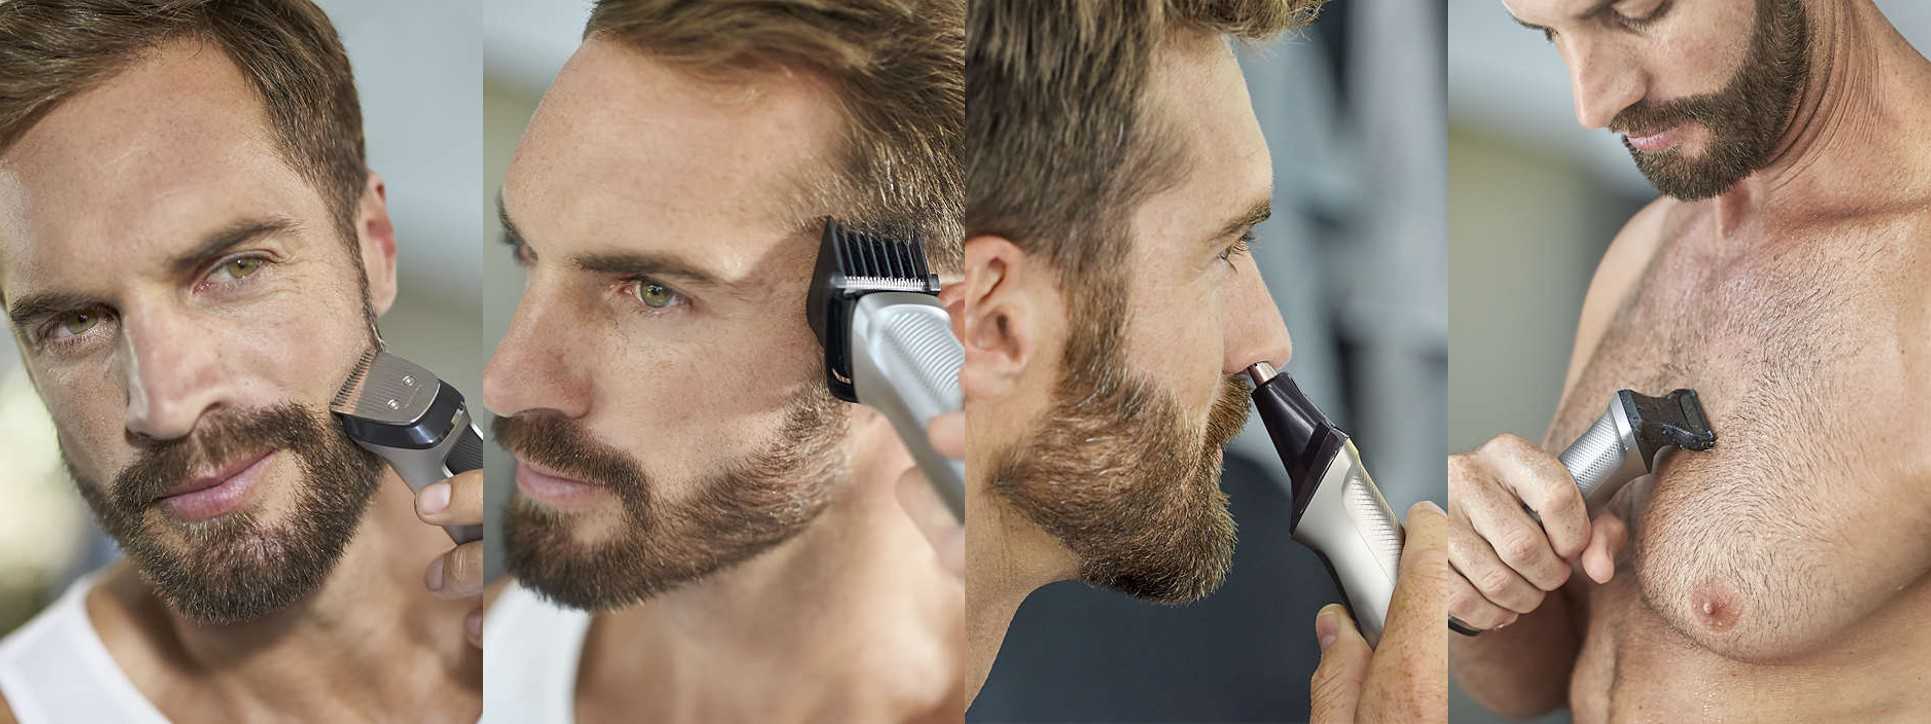 Какой бритвой лучше бриться для роста бороды